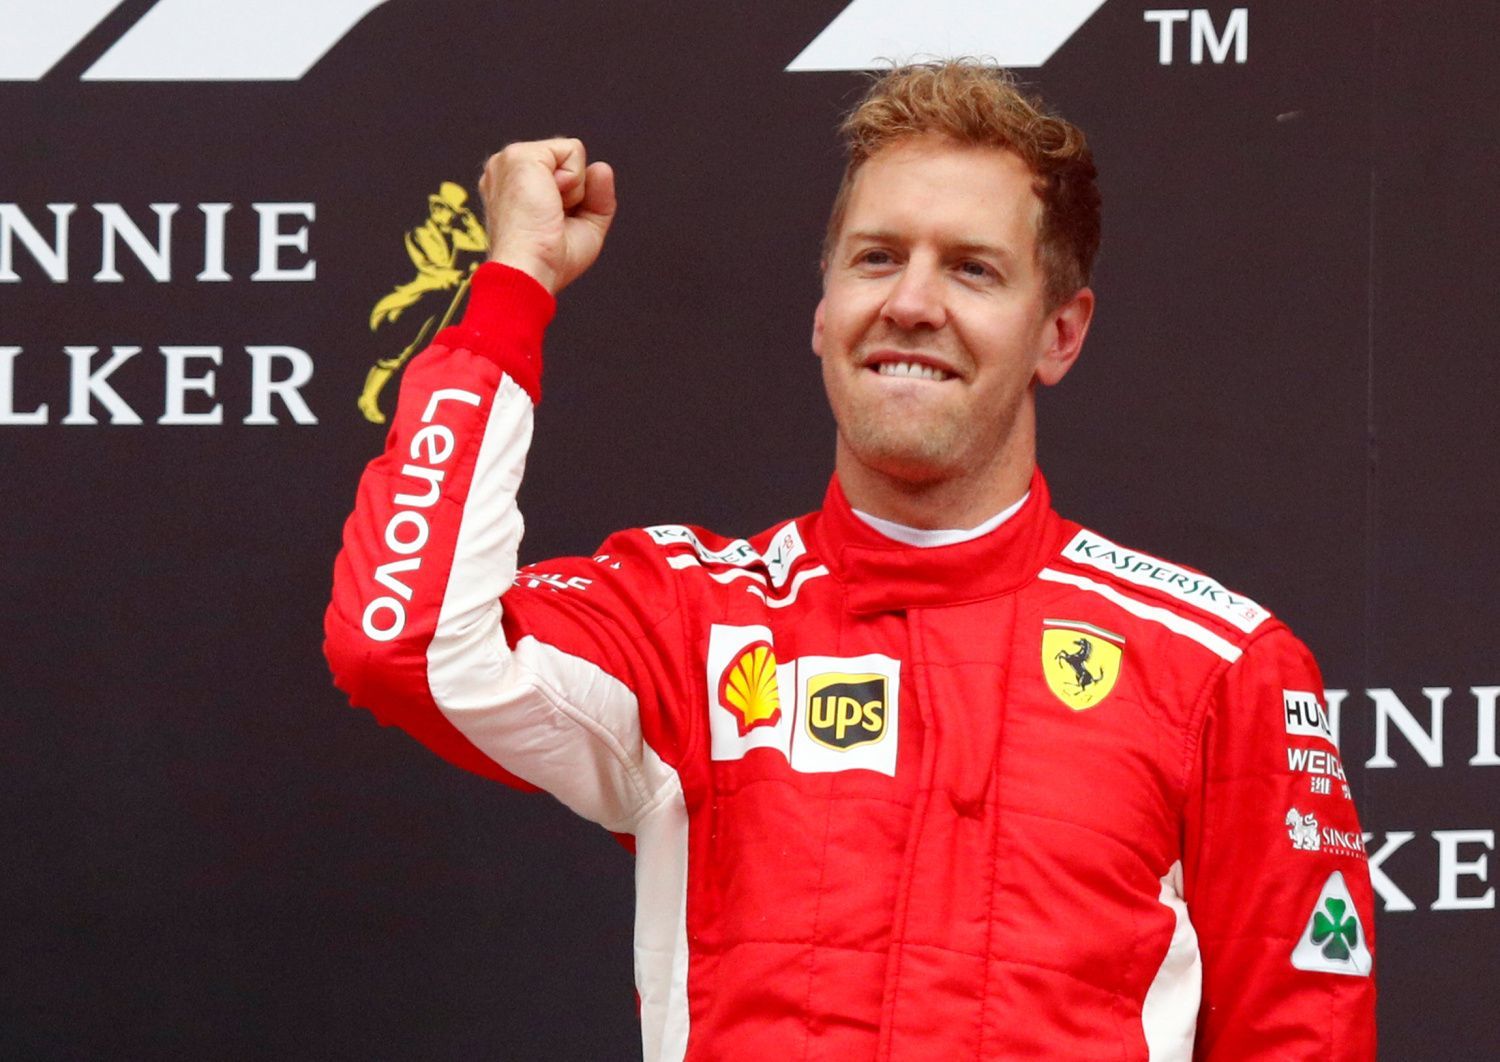 Sebastian Vettel slaví vítězství v GP Belgie 2018